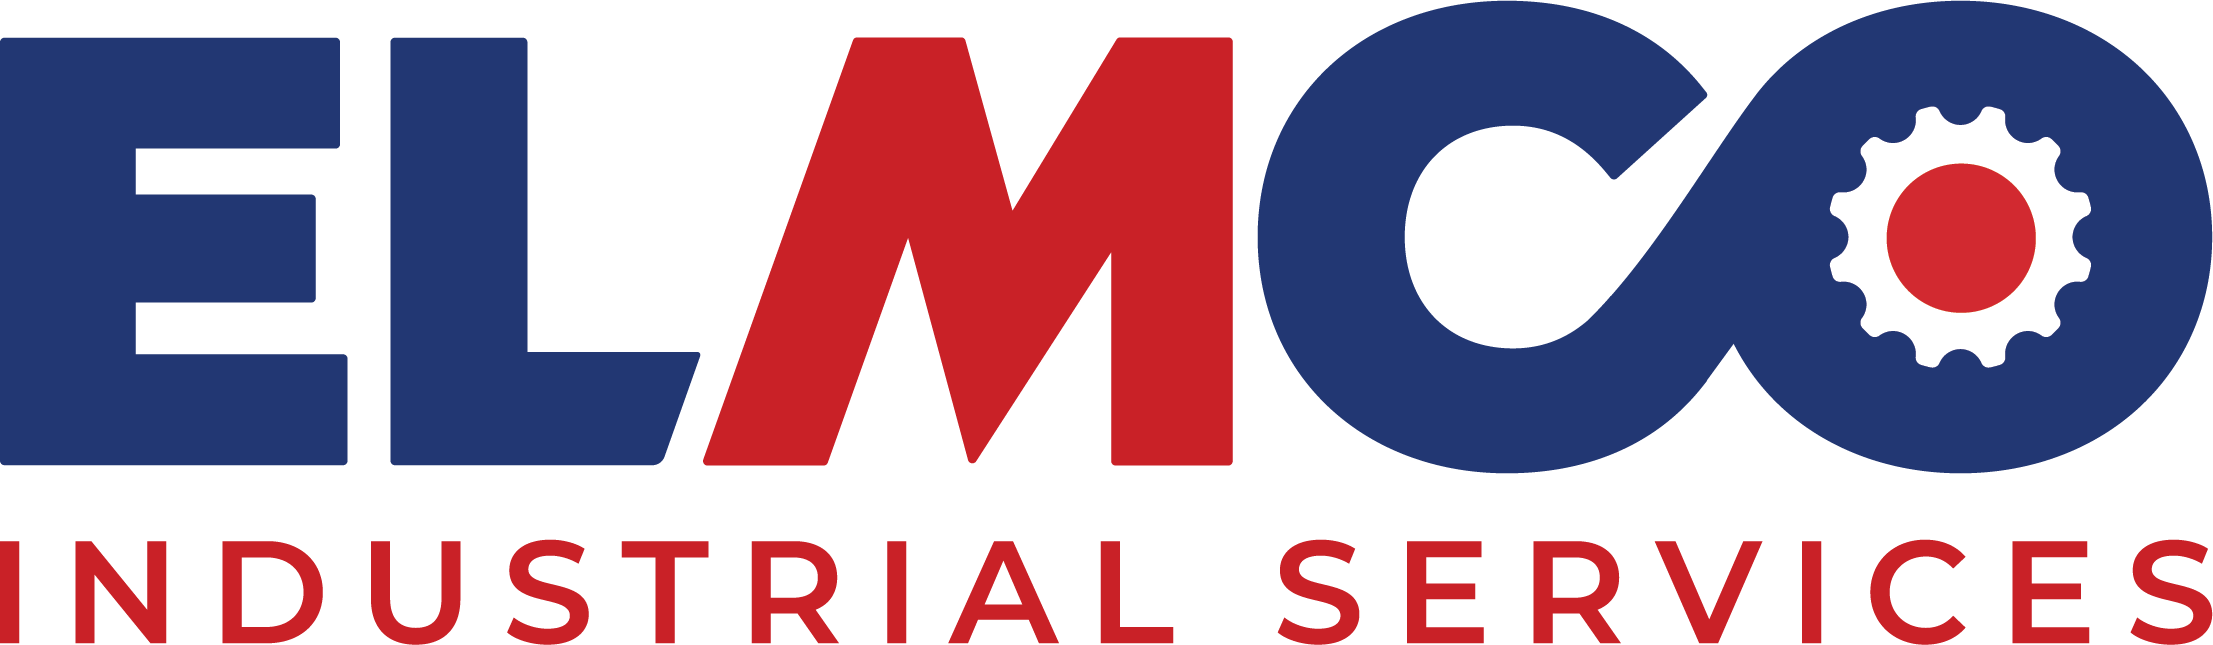 Elmco Logo